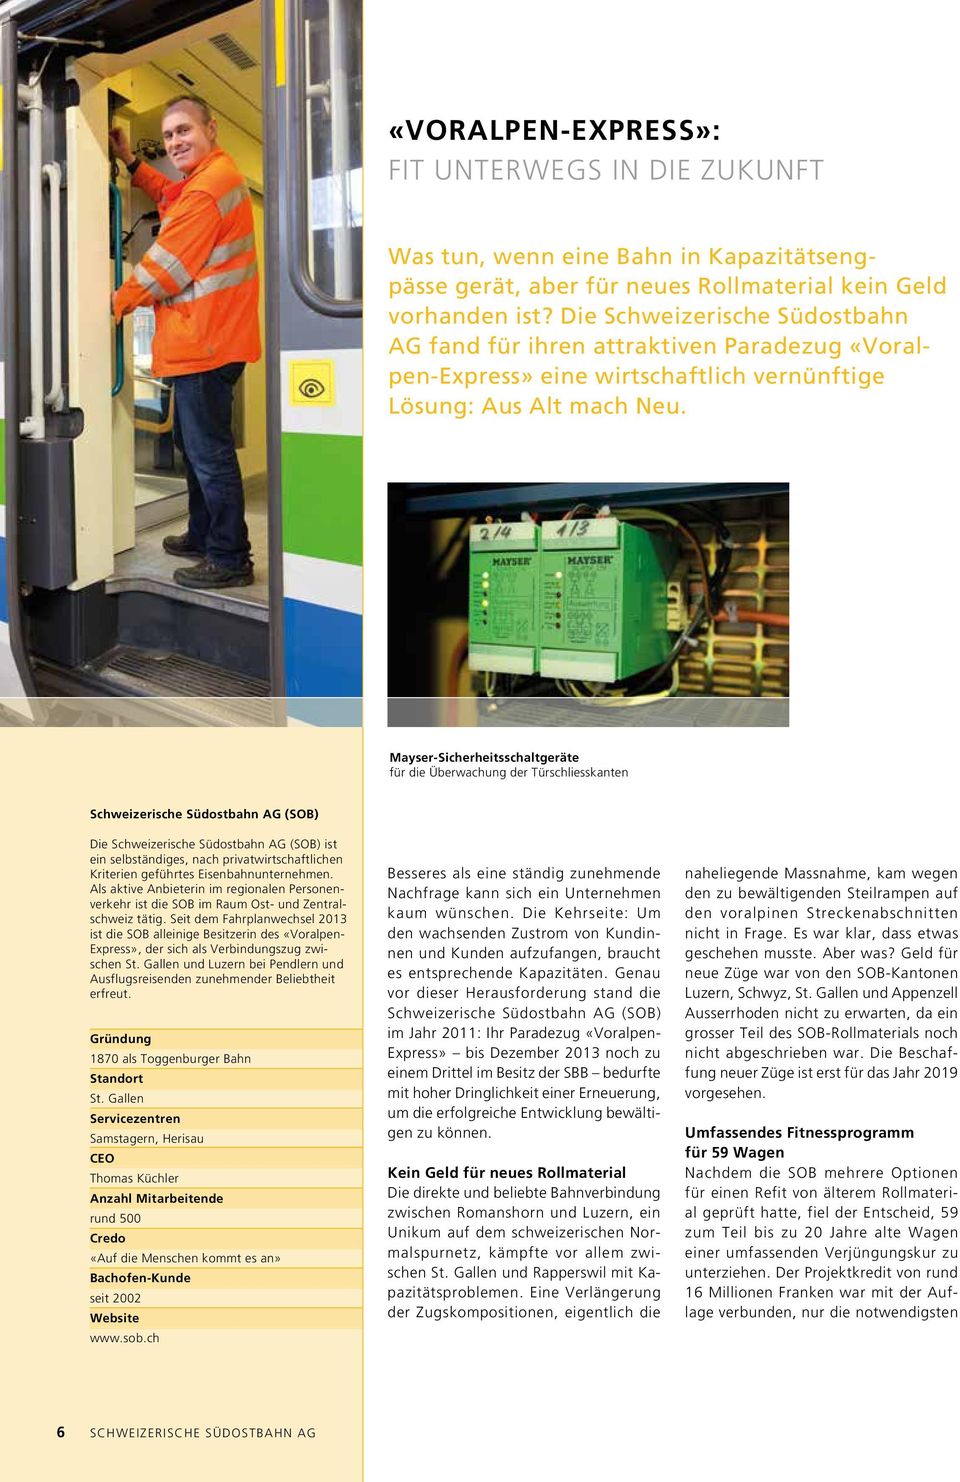 Mayser-Sicherheitsschaltgeräte für die Überwachung der Türschliesskanten Schweizerische Südostbahn AG (SOB) Die Schweizerische Südostbahn AG (SOB) ist ein selbständiges, nach privatwirtschaftlichen